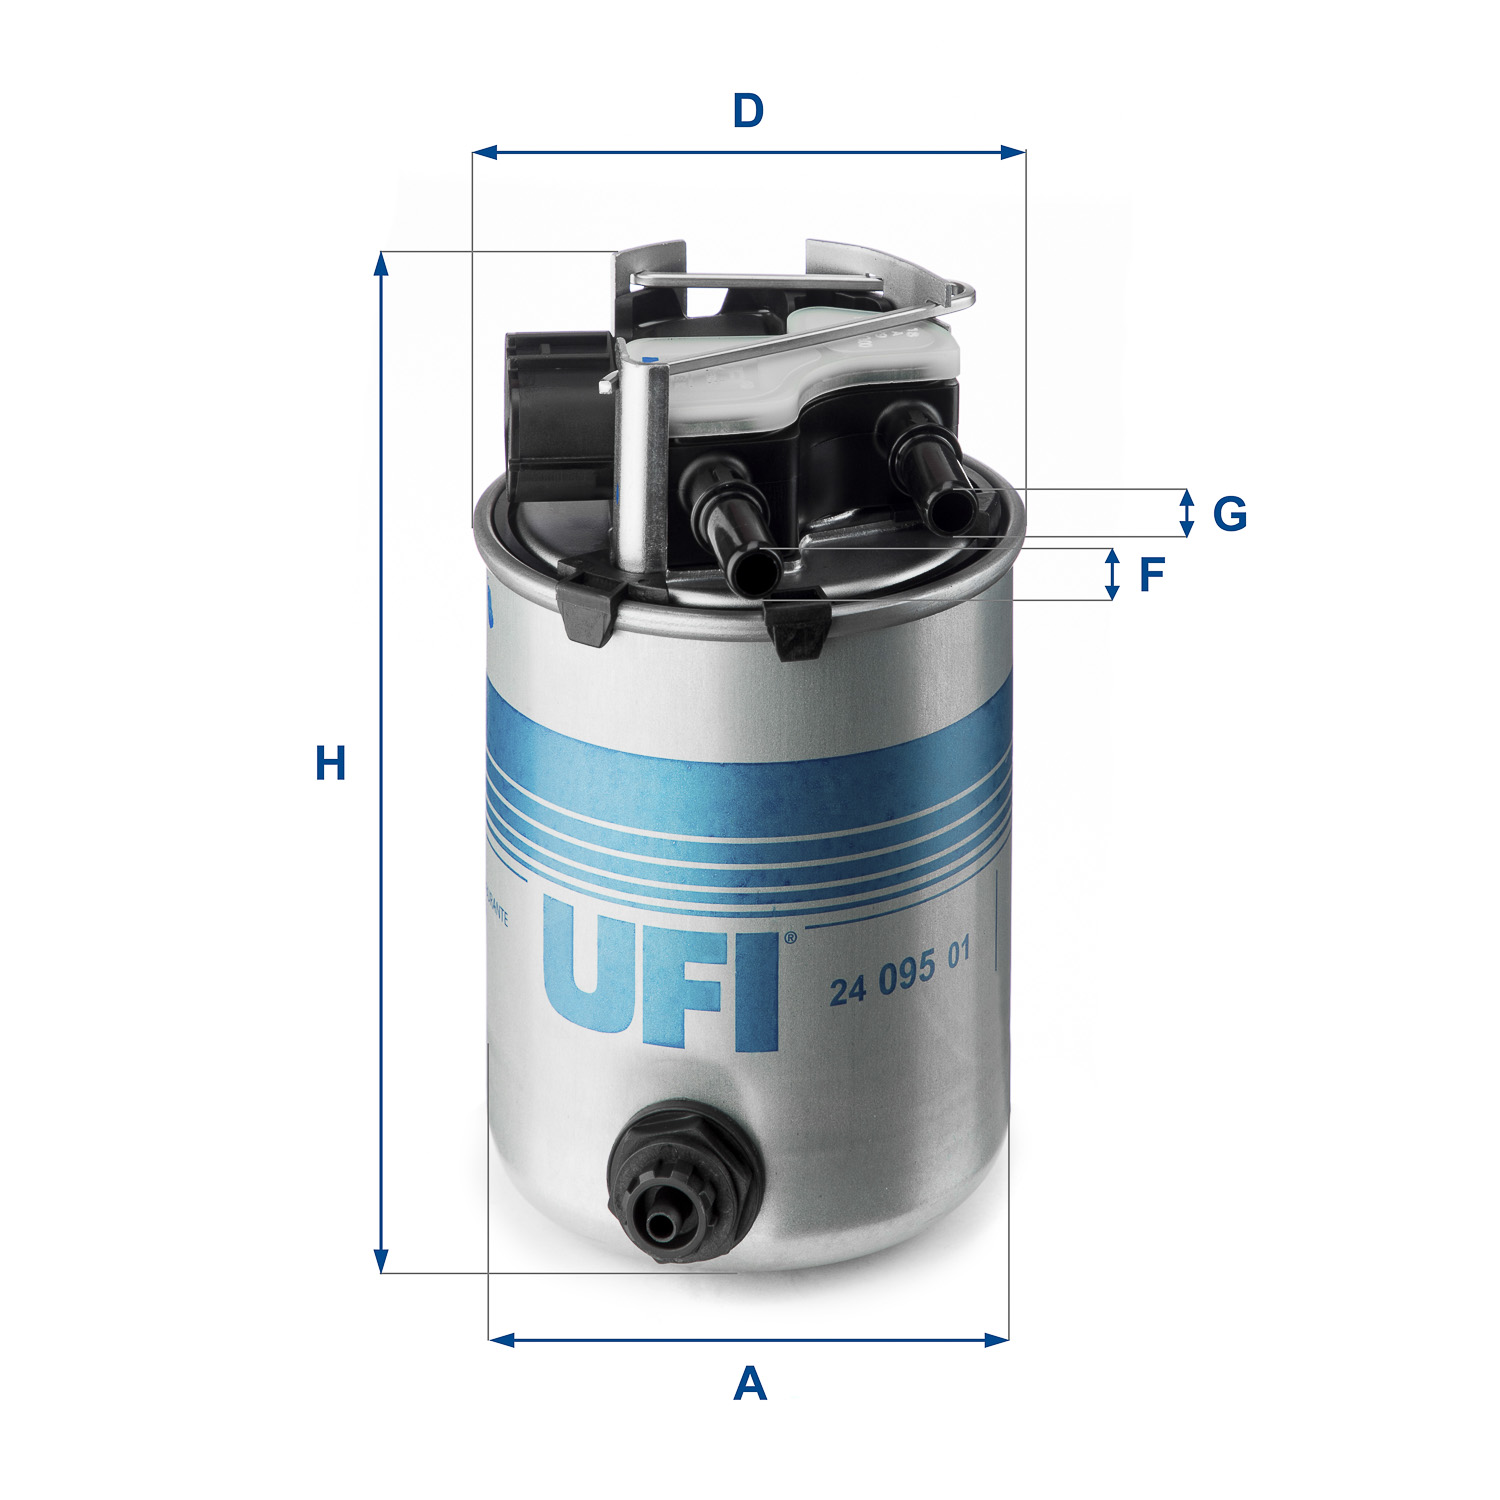 UFI  yakit filtresi renault kadjar 15 dci16 dci 2015 oem montaj urun 2409501